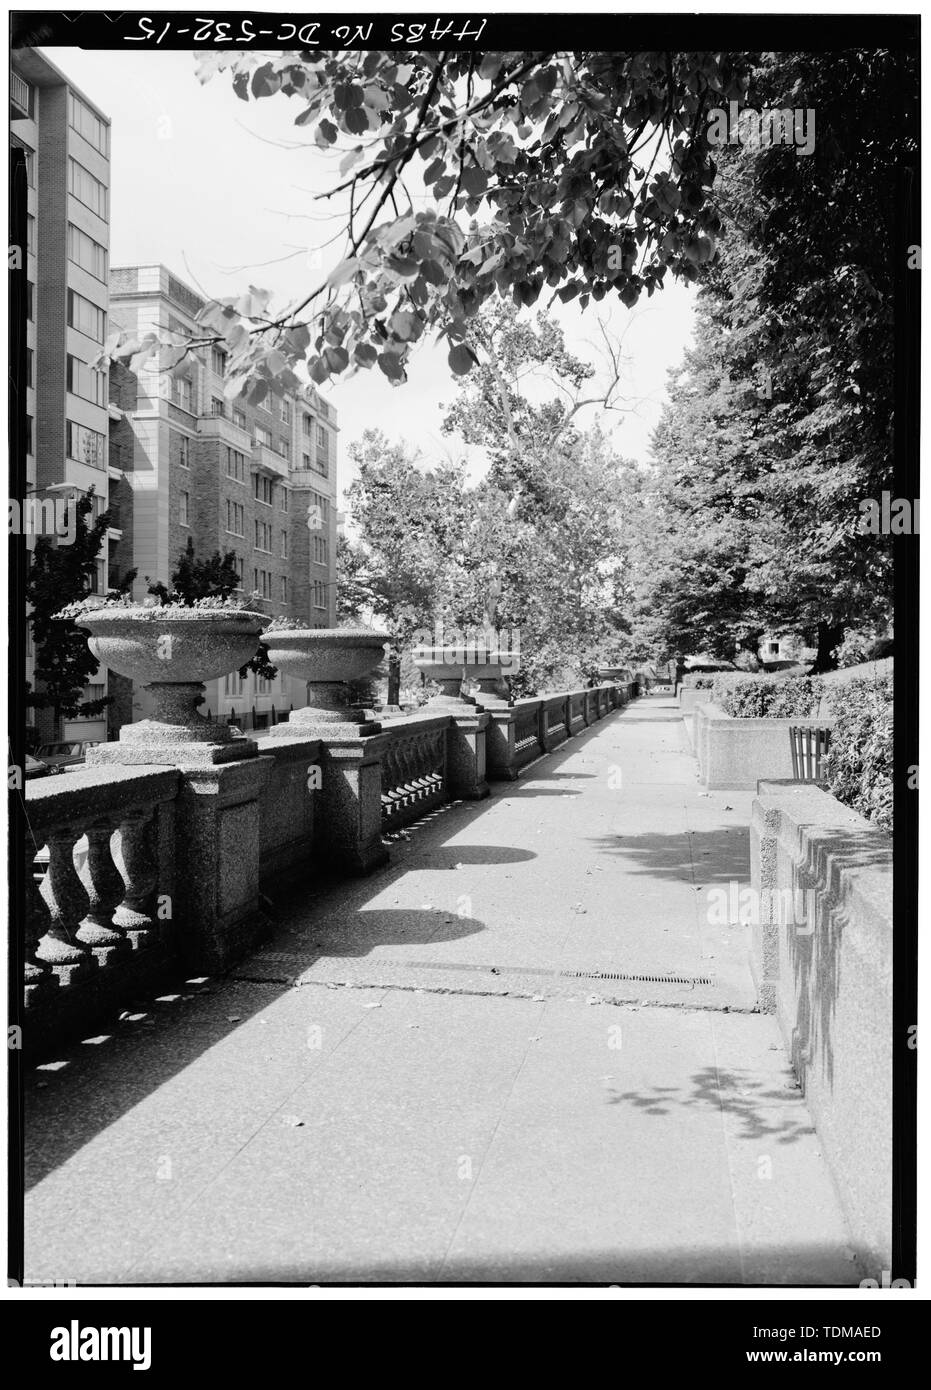 PATHWAY OBEN W STRASSE, Urnen und BALUSTRADE, August 1976-Meridian Hill Park, begrenzt durch fünfzehnten, sechzehnten, Euklid und W Straßen, Northwest, Washington, District of Columbia, DC Stockfoto